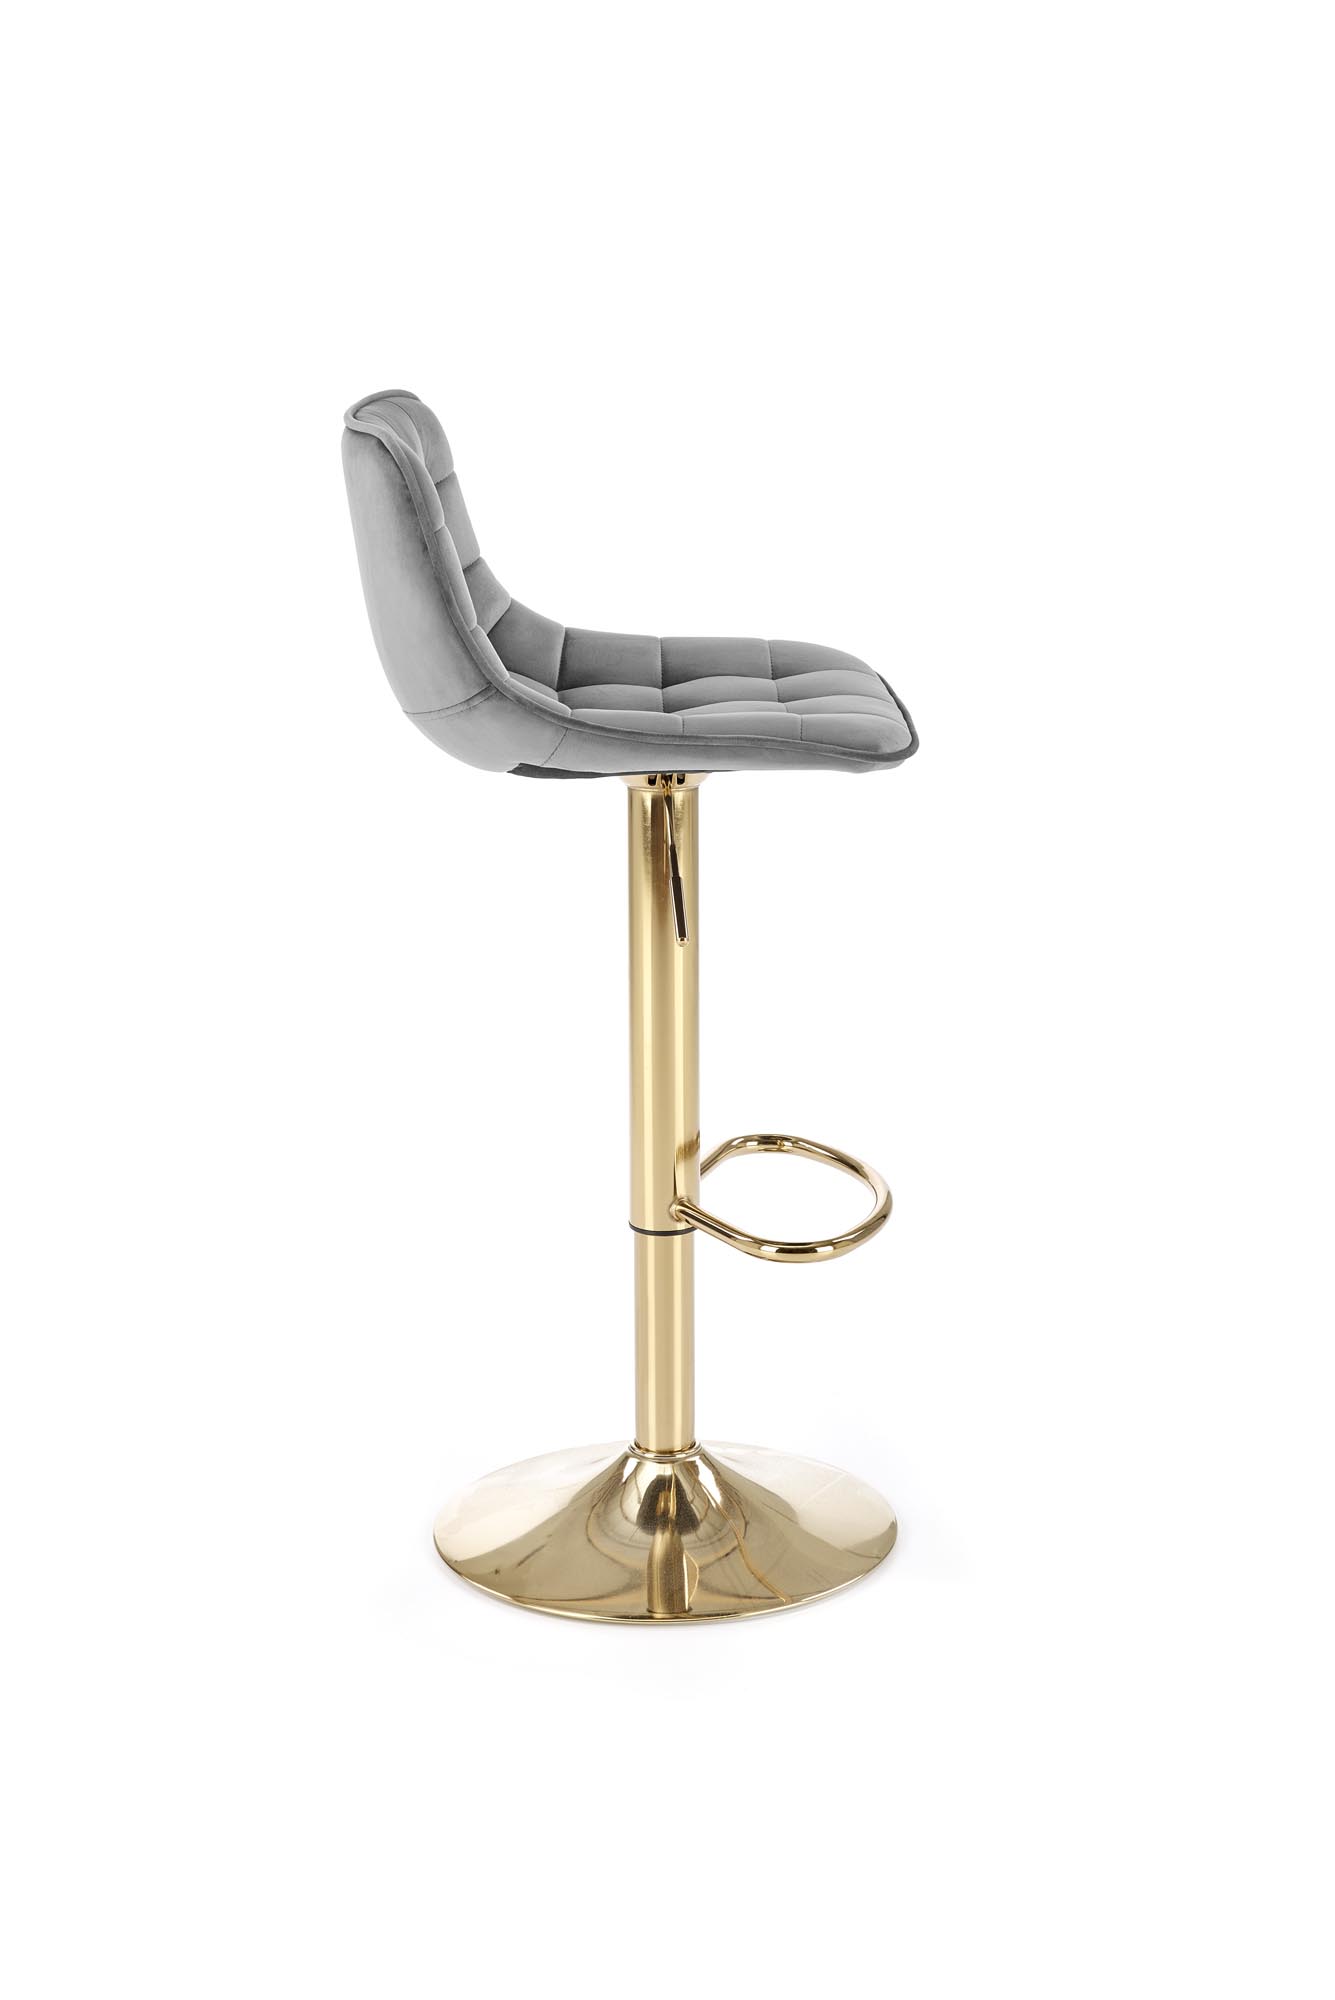 H120 Barová stolička Nohy - zlaté, Sedák - tmavý popol (1p=1szt) Barová stolička čalúnená h120 - tmavý popol / zlaté